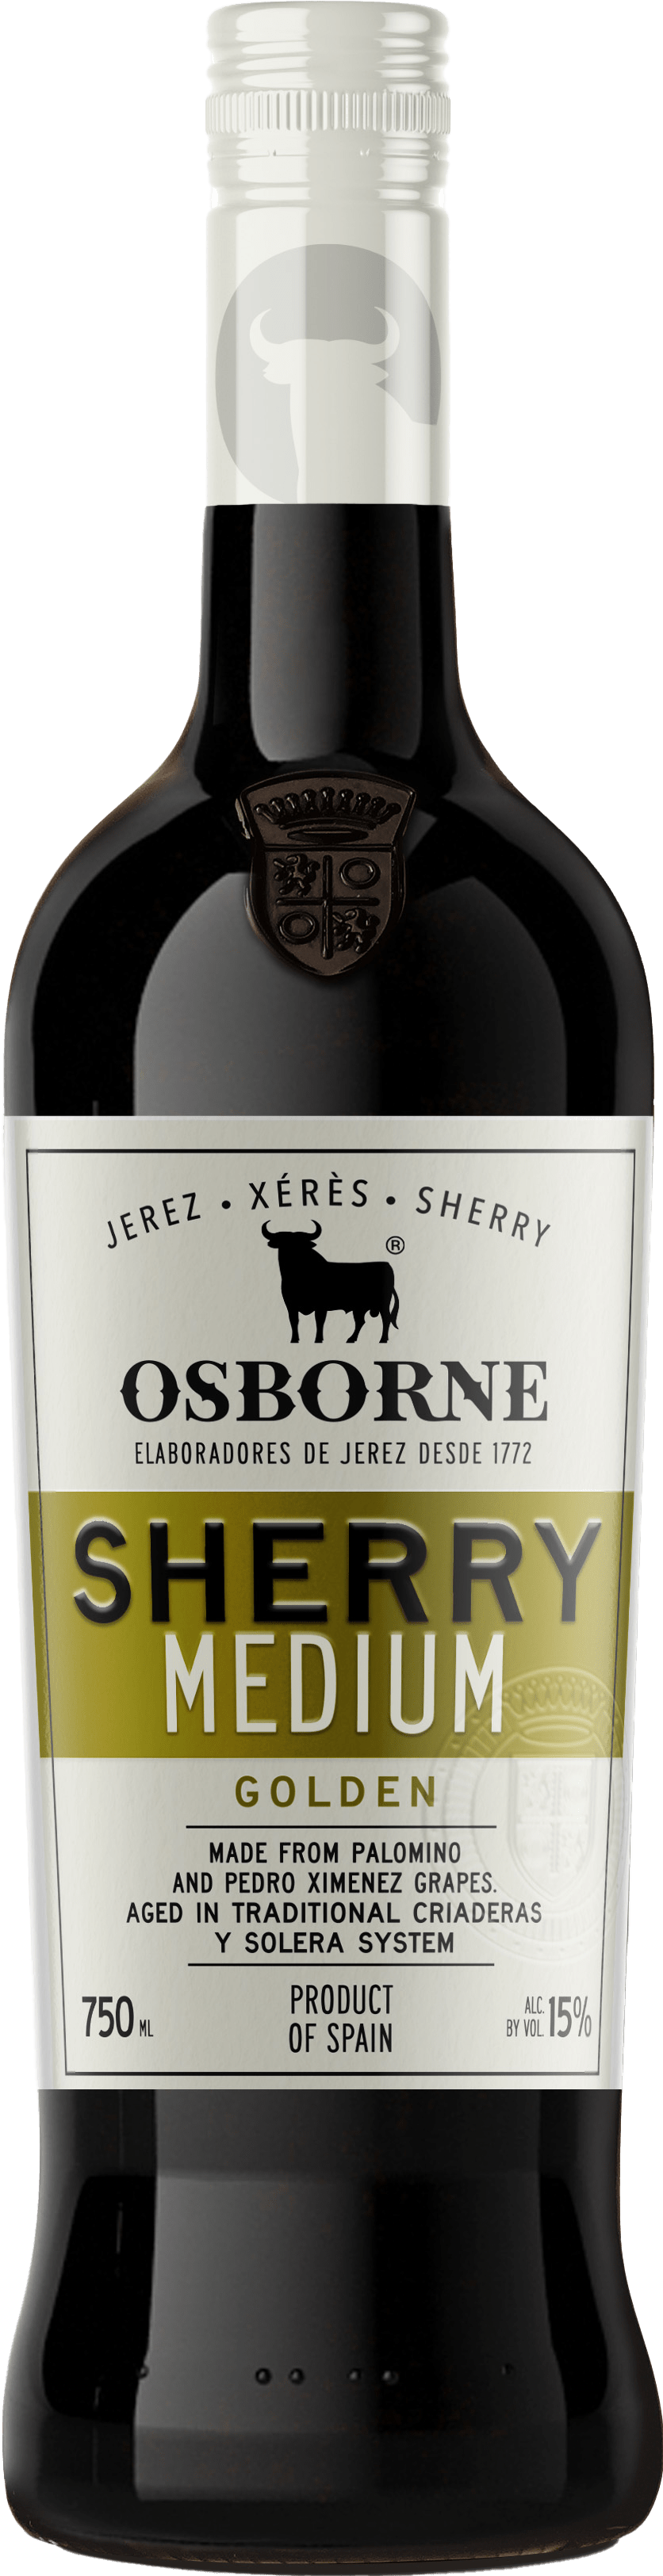 Osborne Sherry Golden Medium von Osborne